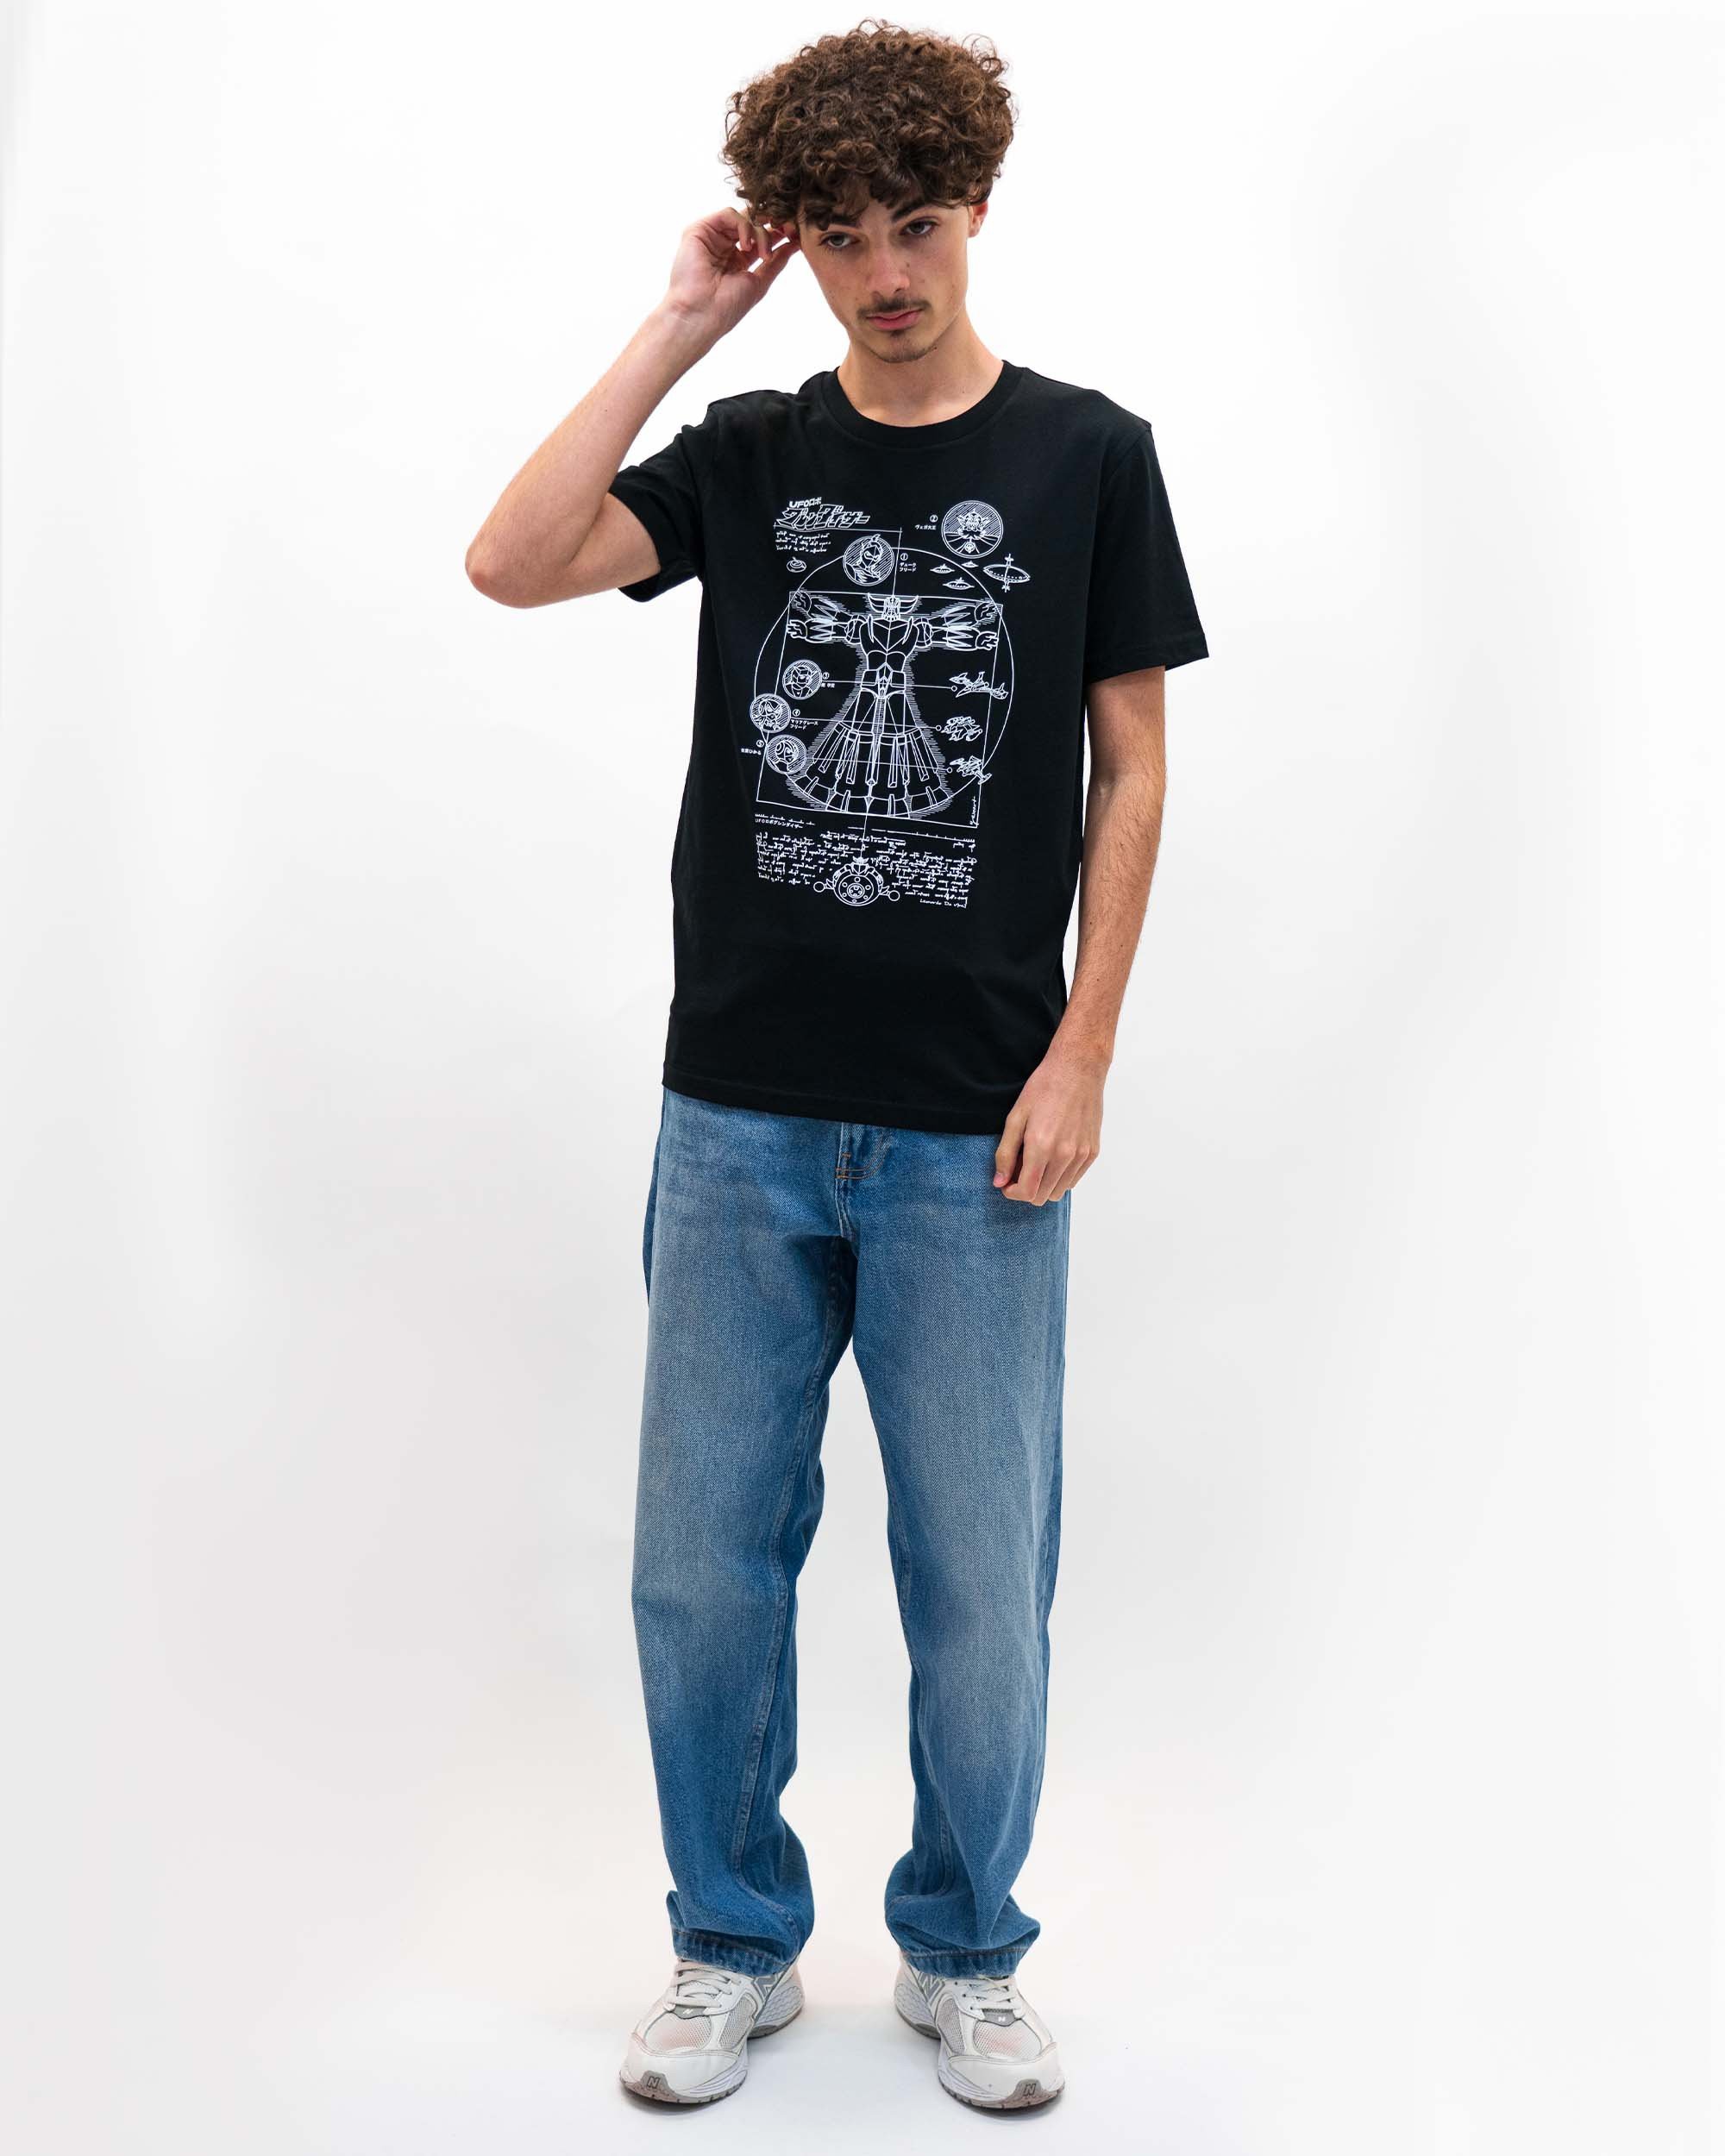 T-shirt Grendizer Blueprint de couleur Noir par yexart